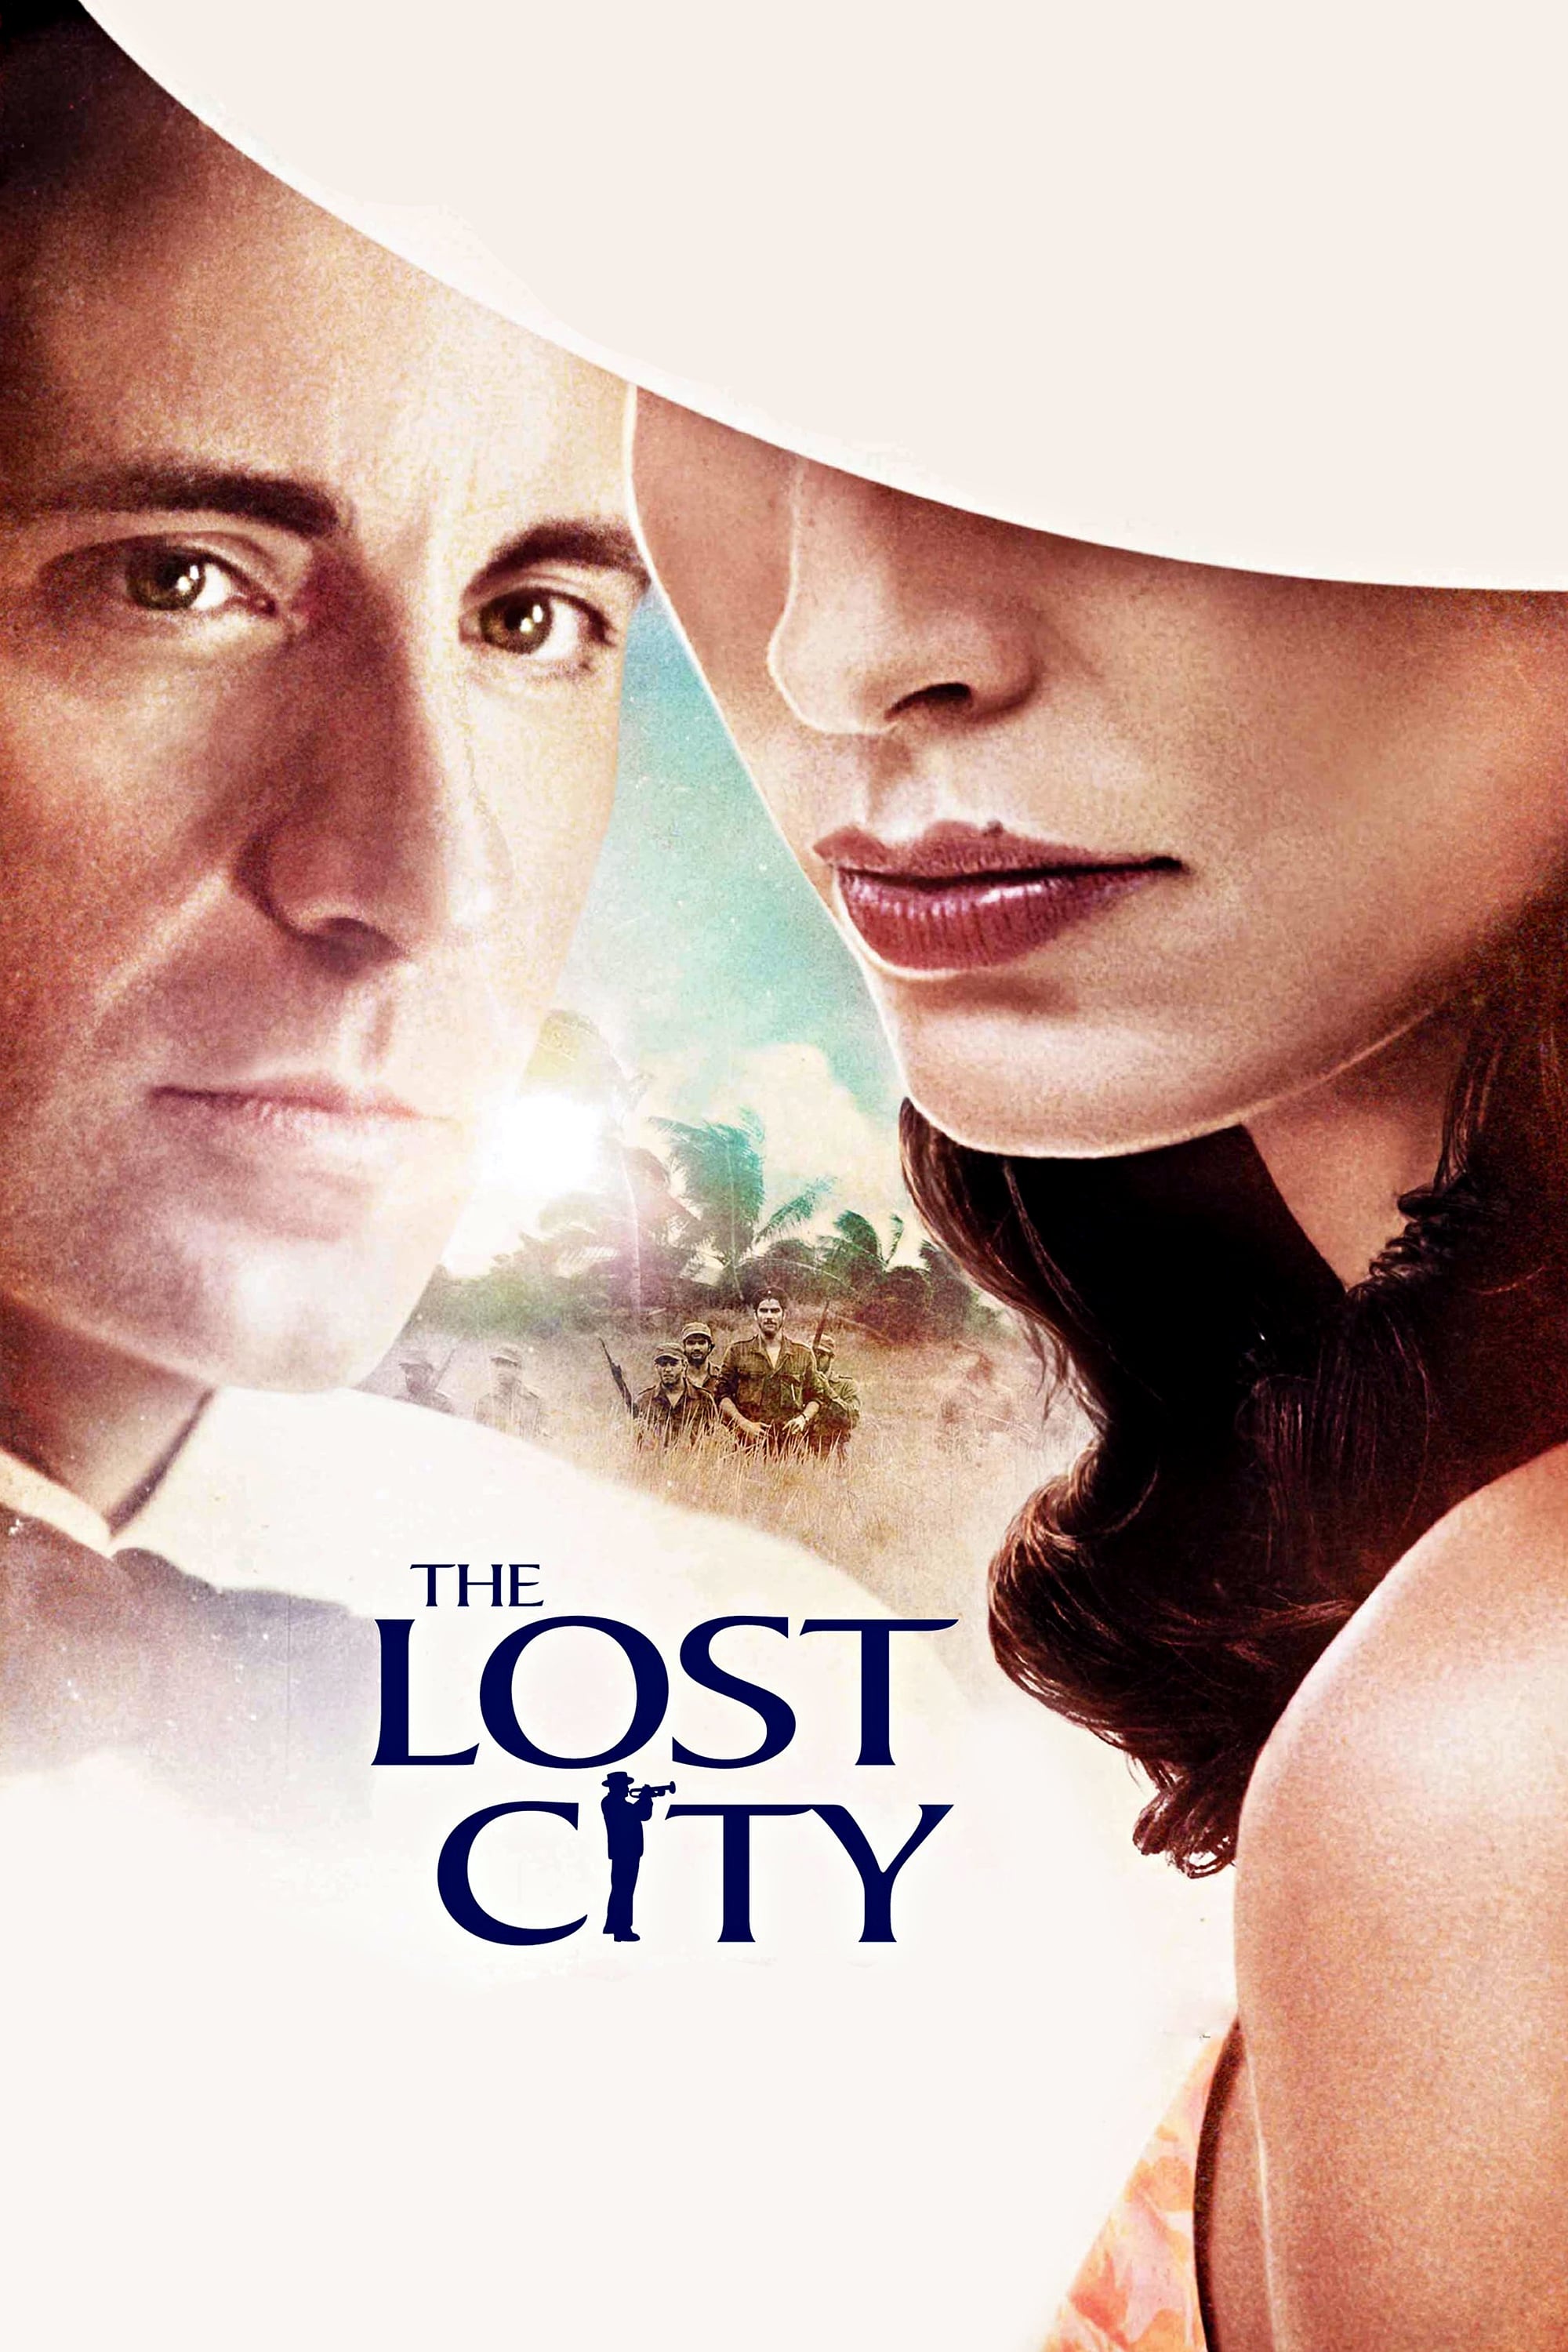 Plakat von "The Lost City"